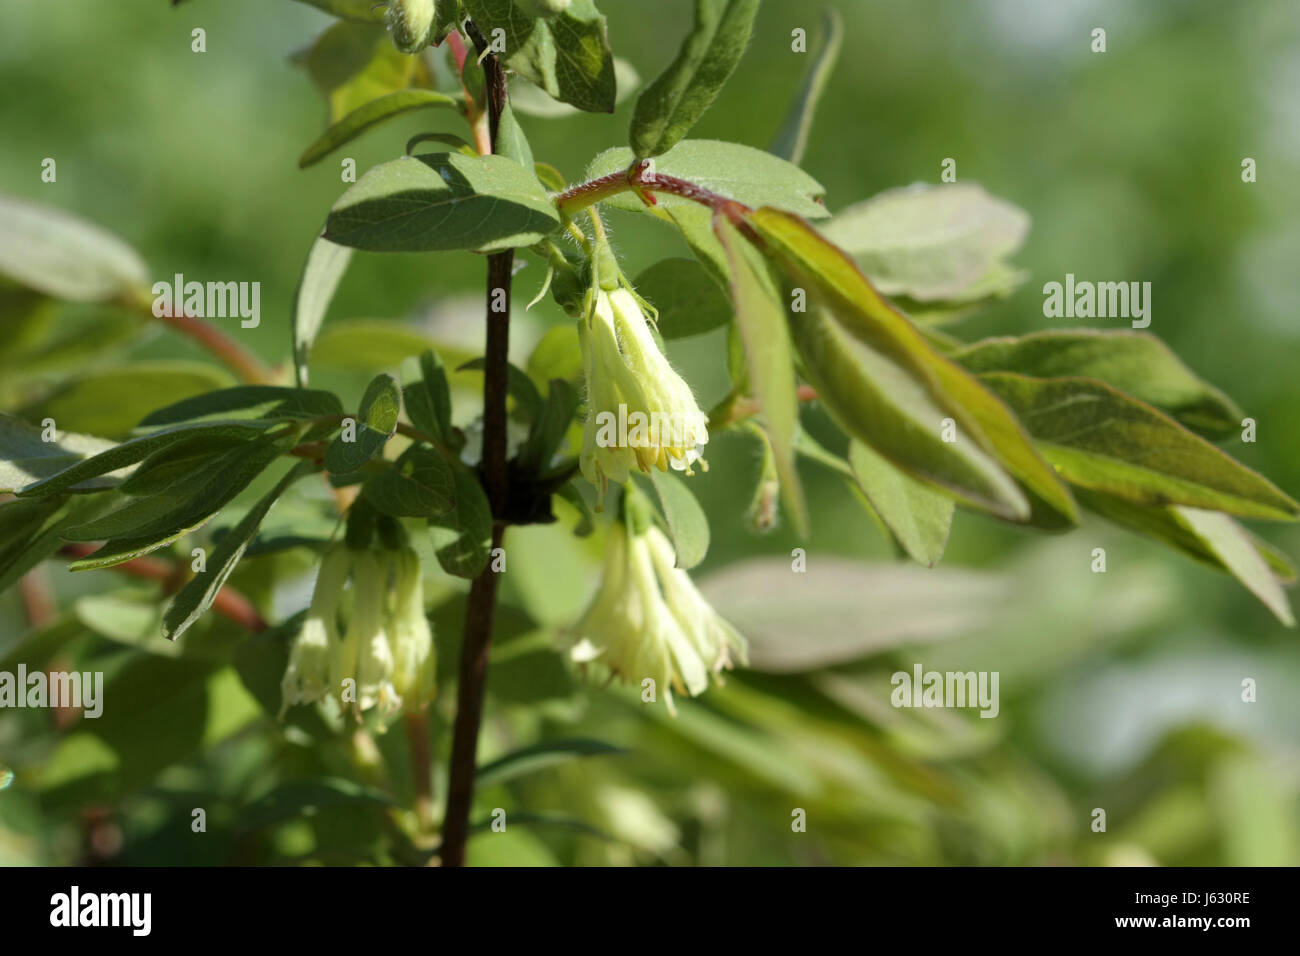 Delicati fiori gialli del caprifoglio sono commestibili su un ramo con foglie verdi fioriti Foto Stock